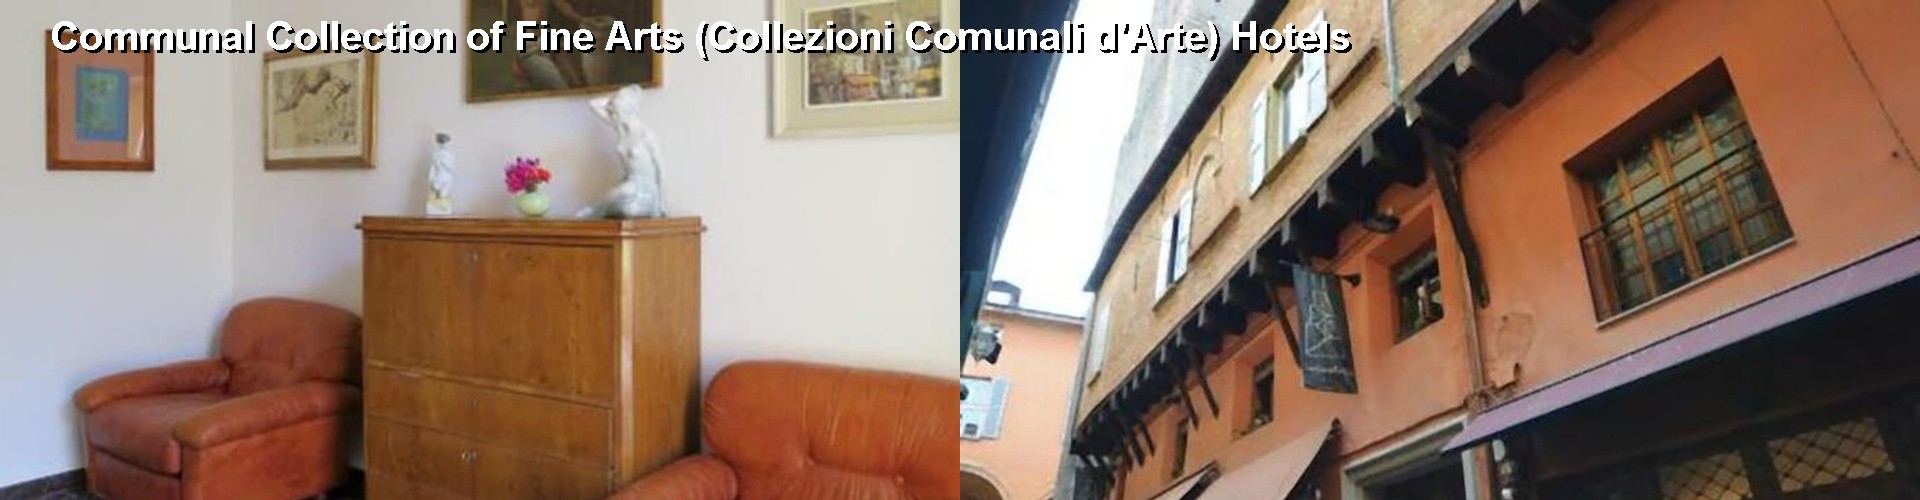 5 Best Hotels near Communal Collection of Fine Arts (Collezioni Comunali d'Arte)